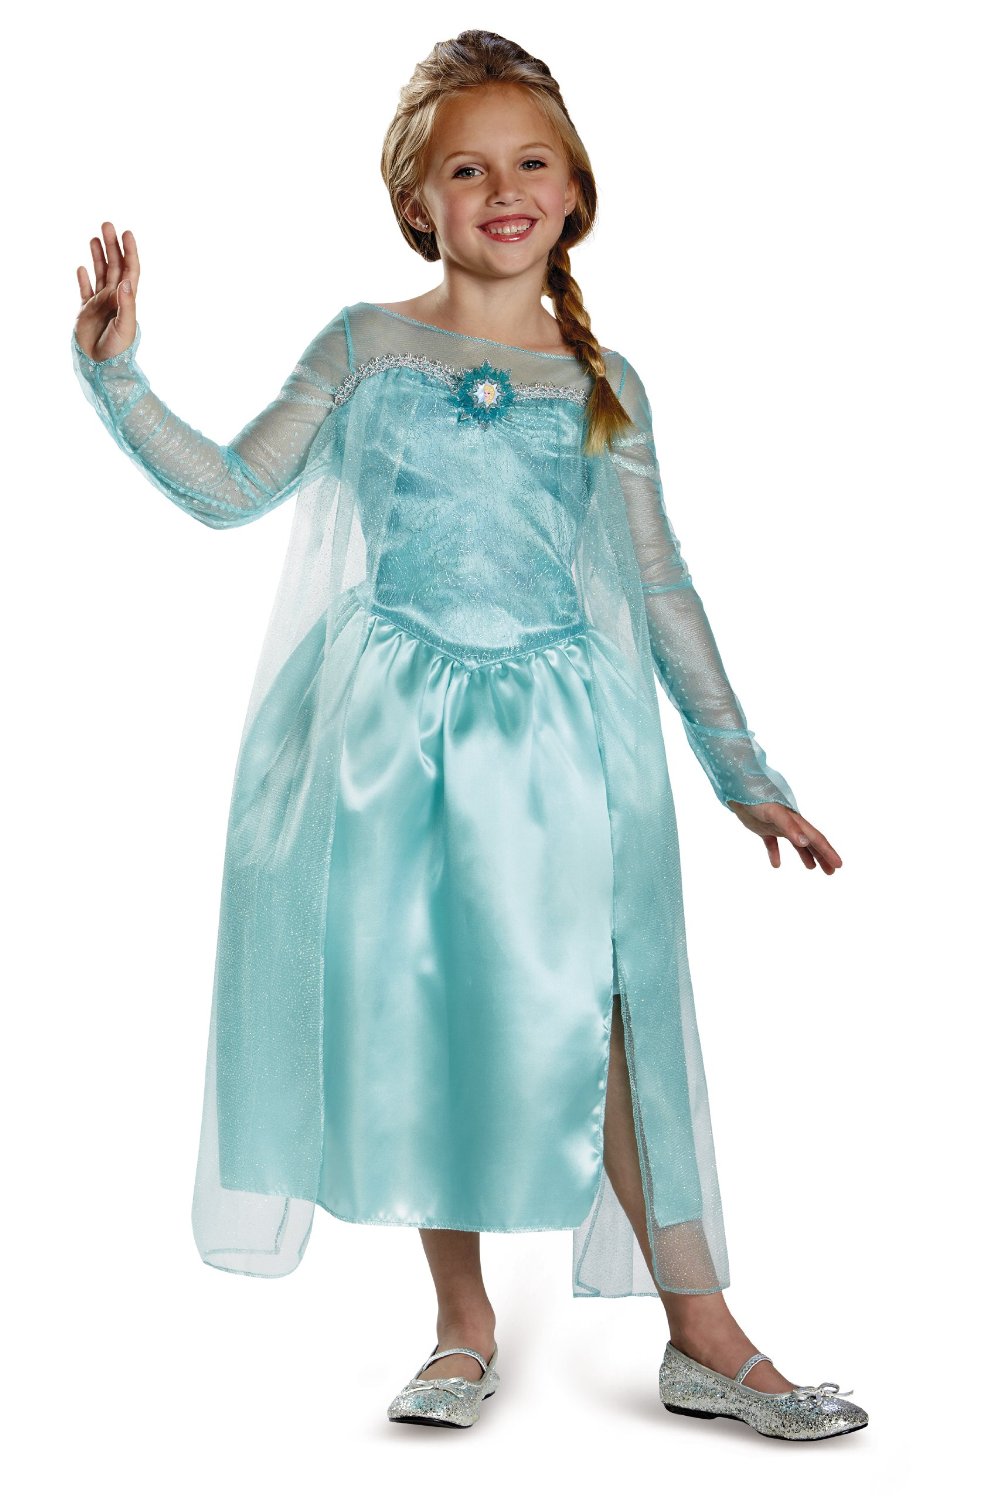 Frozen Elsa Snow Queen Gown Classic Girls Costume